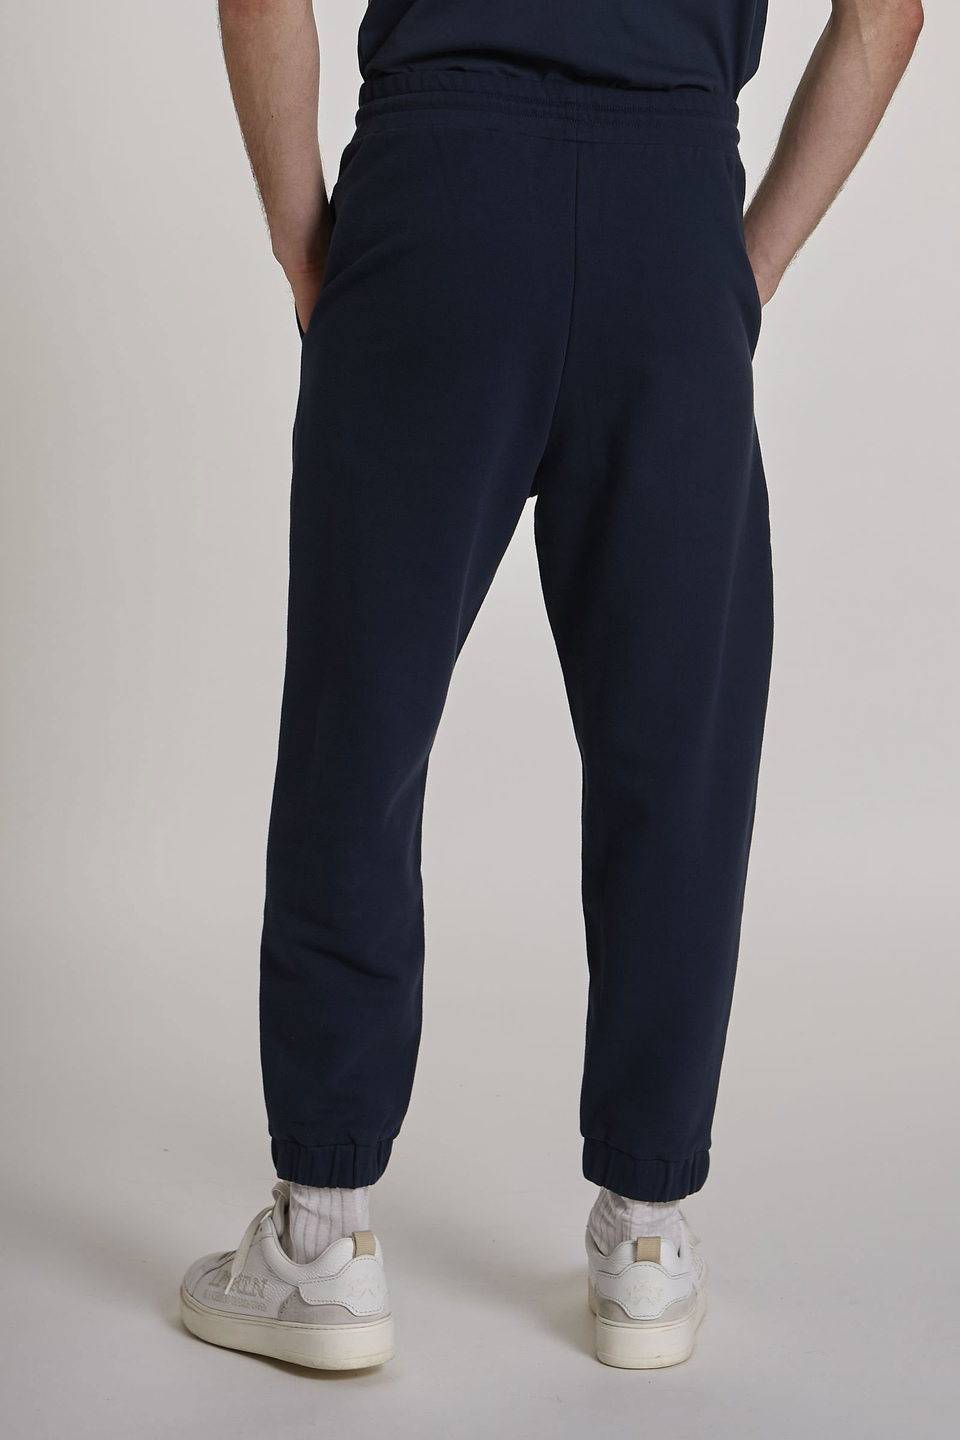 Pantalone da uomo modello jogger in cotone elasticizzato oversize - La Martina - Official Online Shop